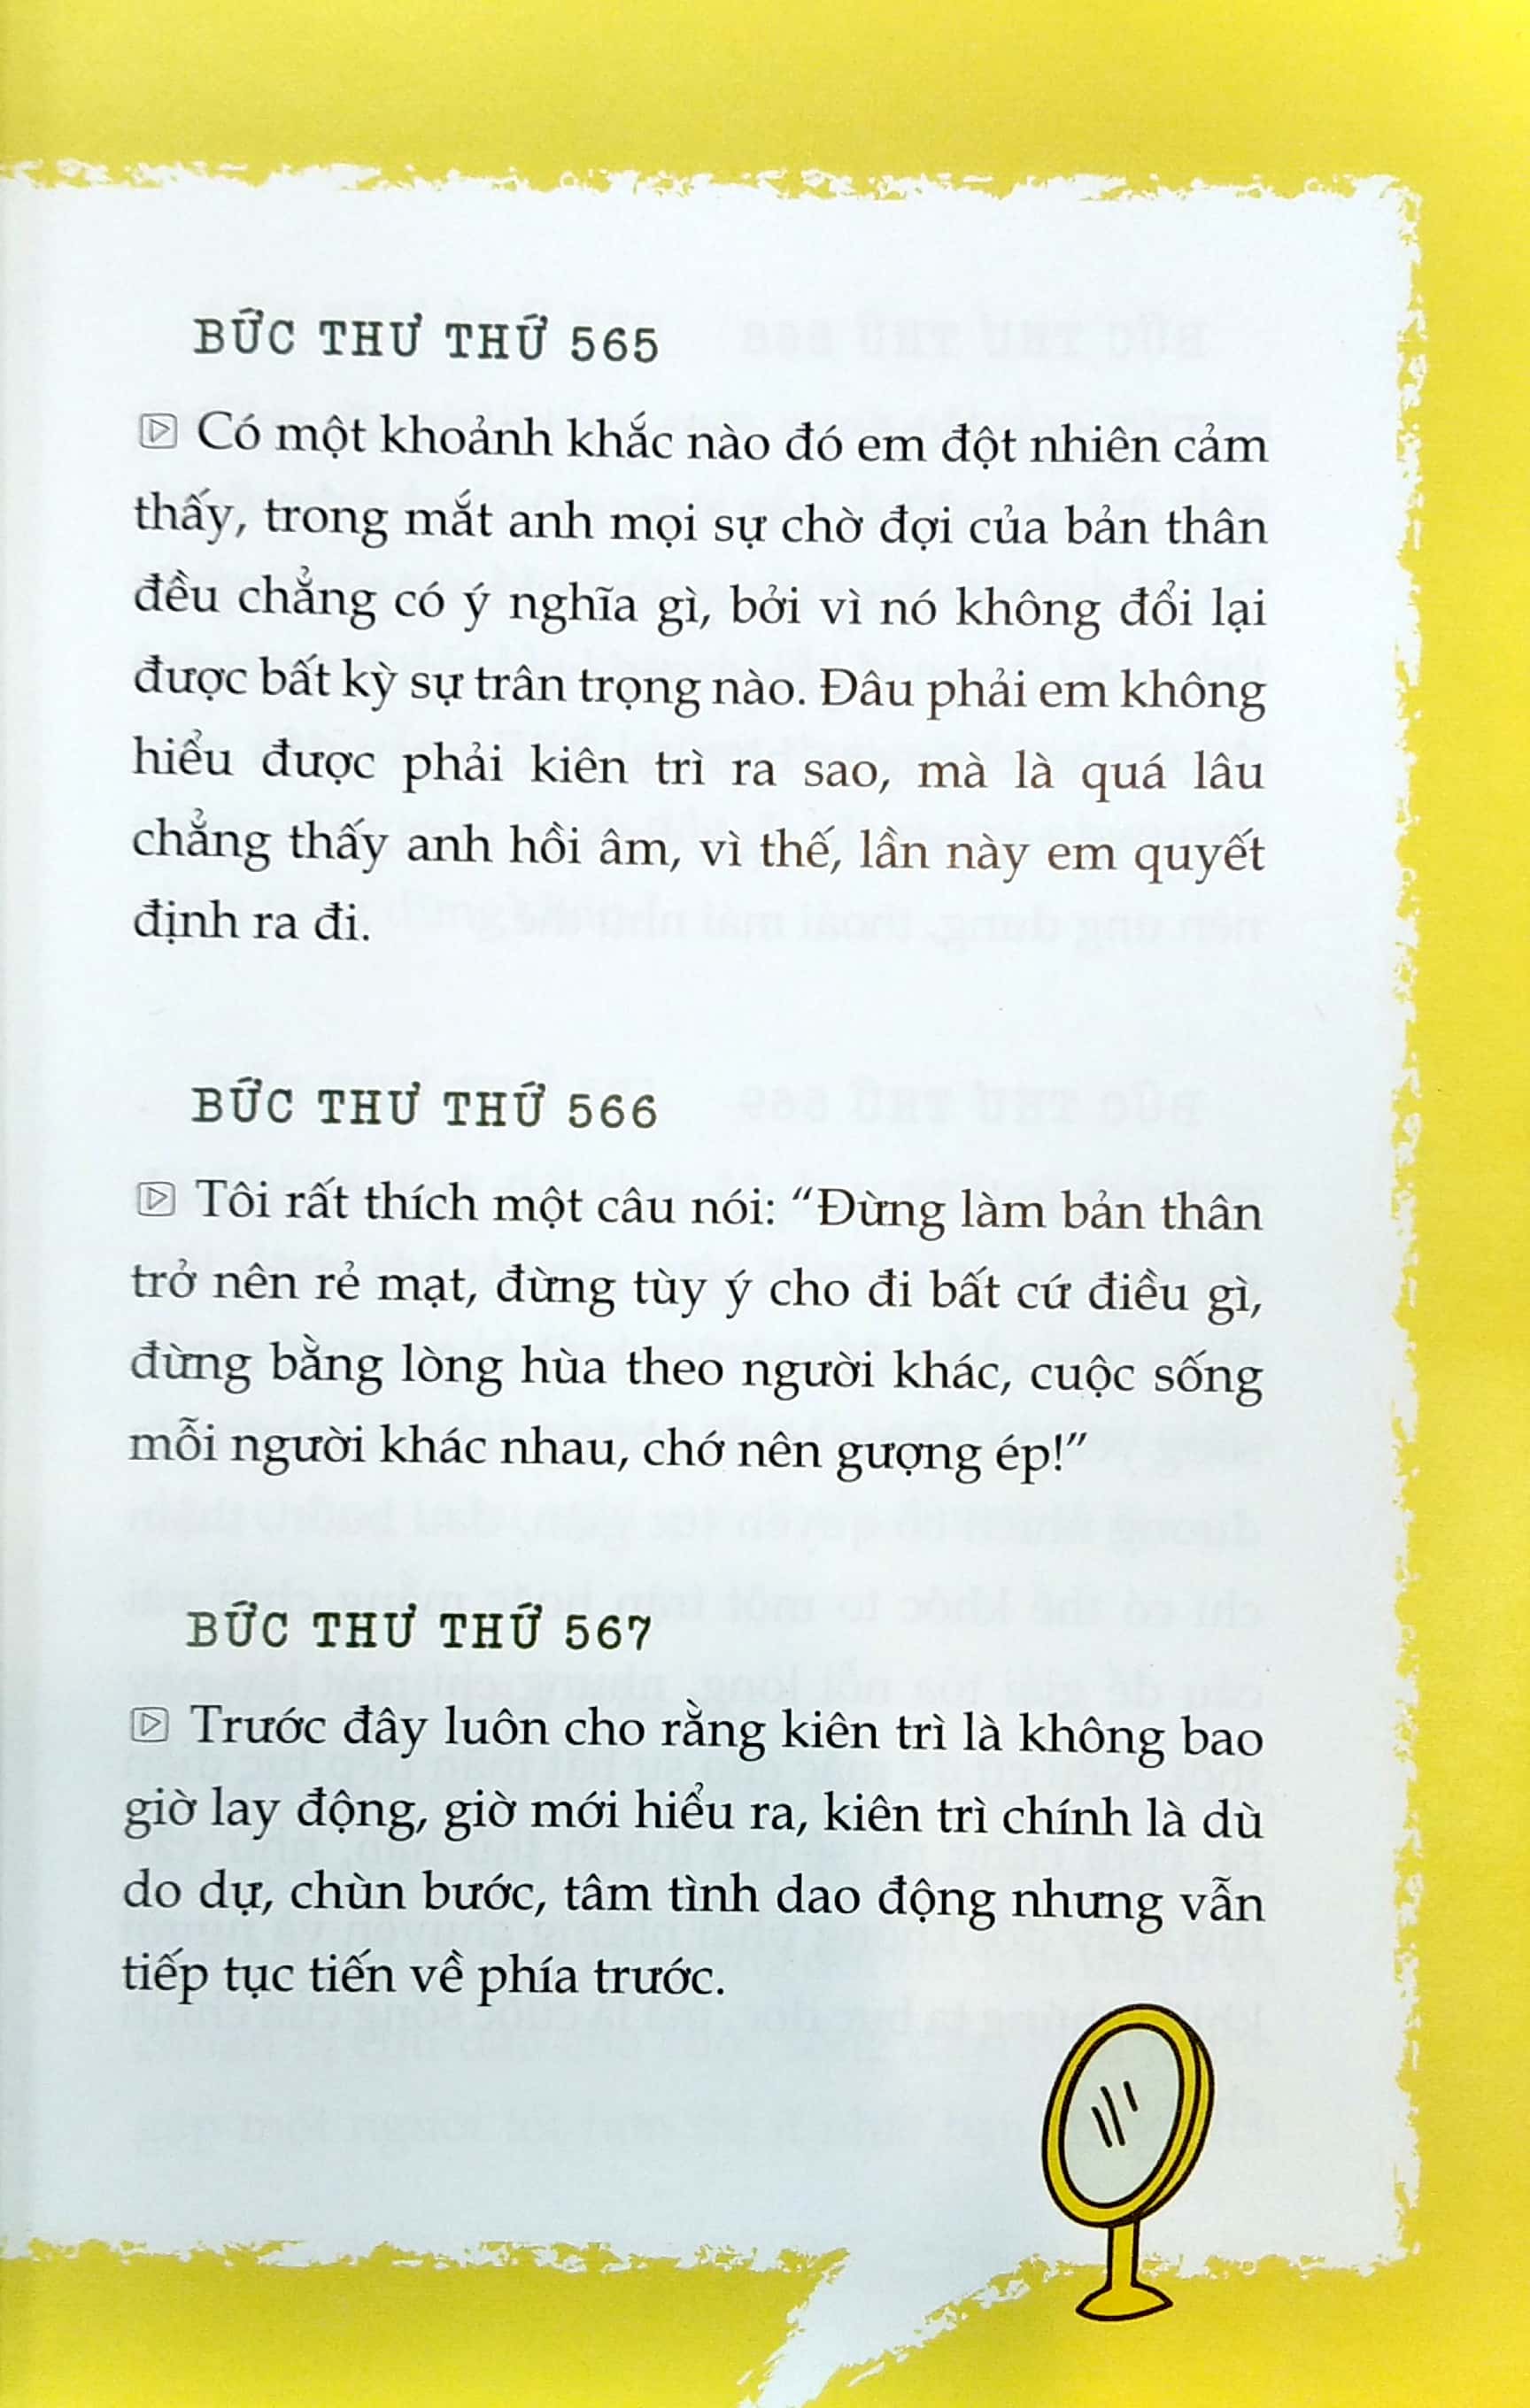 999 Lá Thư Gửi Cho Chính Mình - Mong Bạn Trở Thành Phiên Bản Hạnh Phúc Nhất Tập 2 PDF